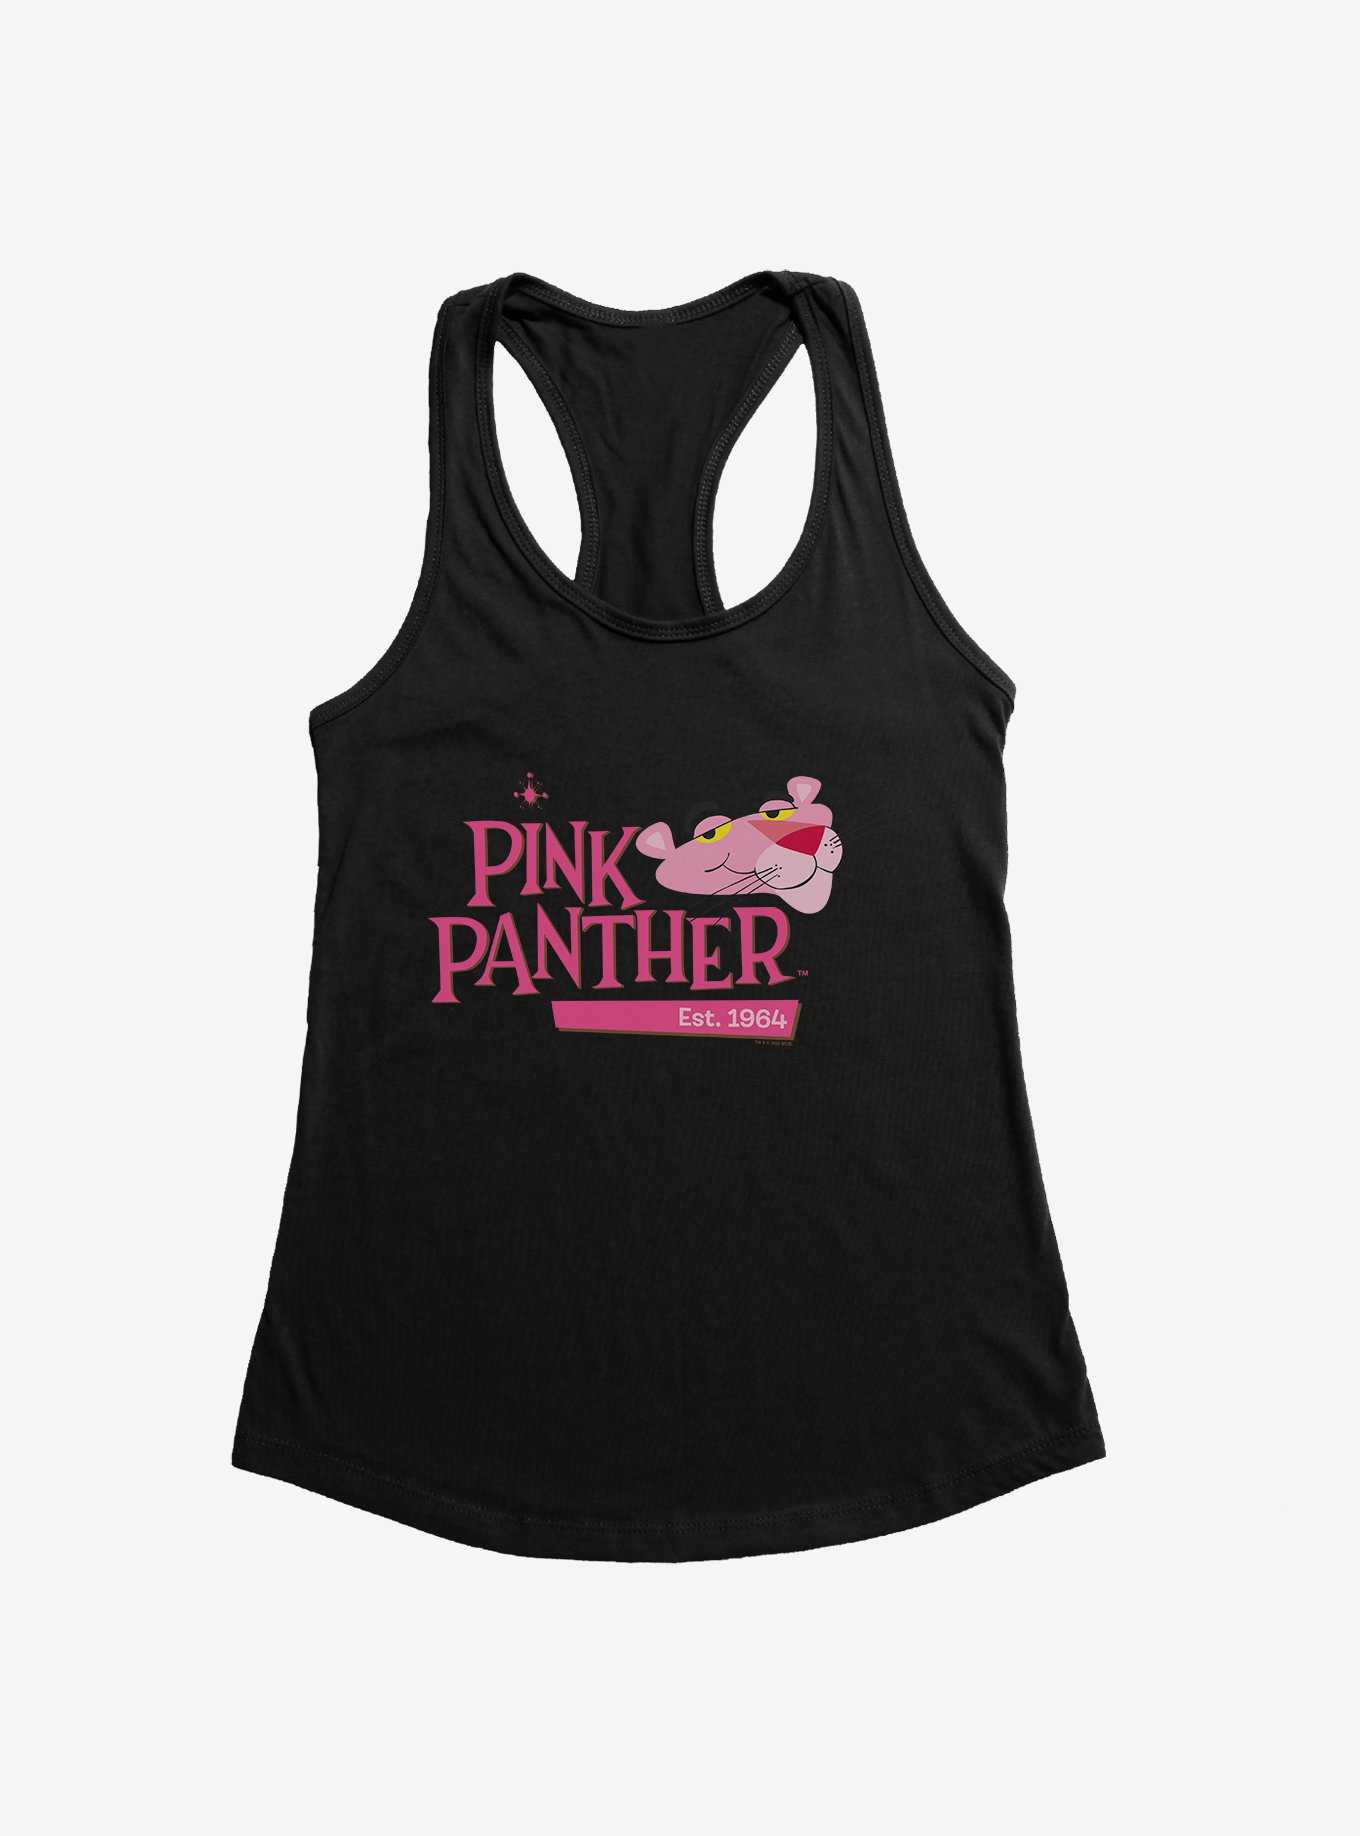 Pink Panther Est 1964 Girls Tank, , hi-res